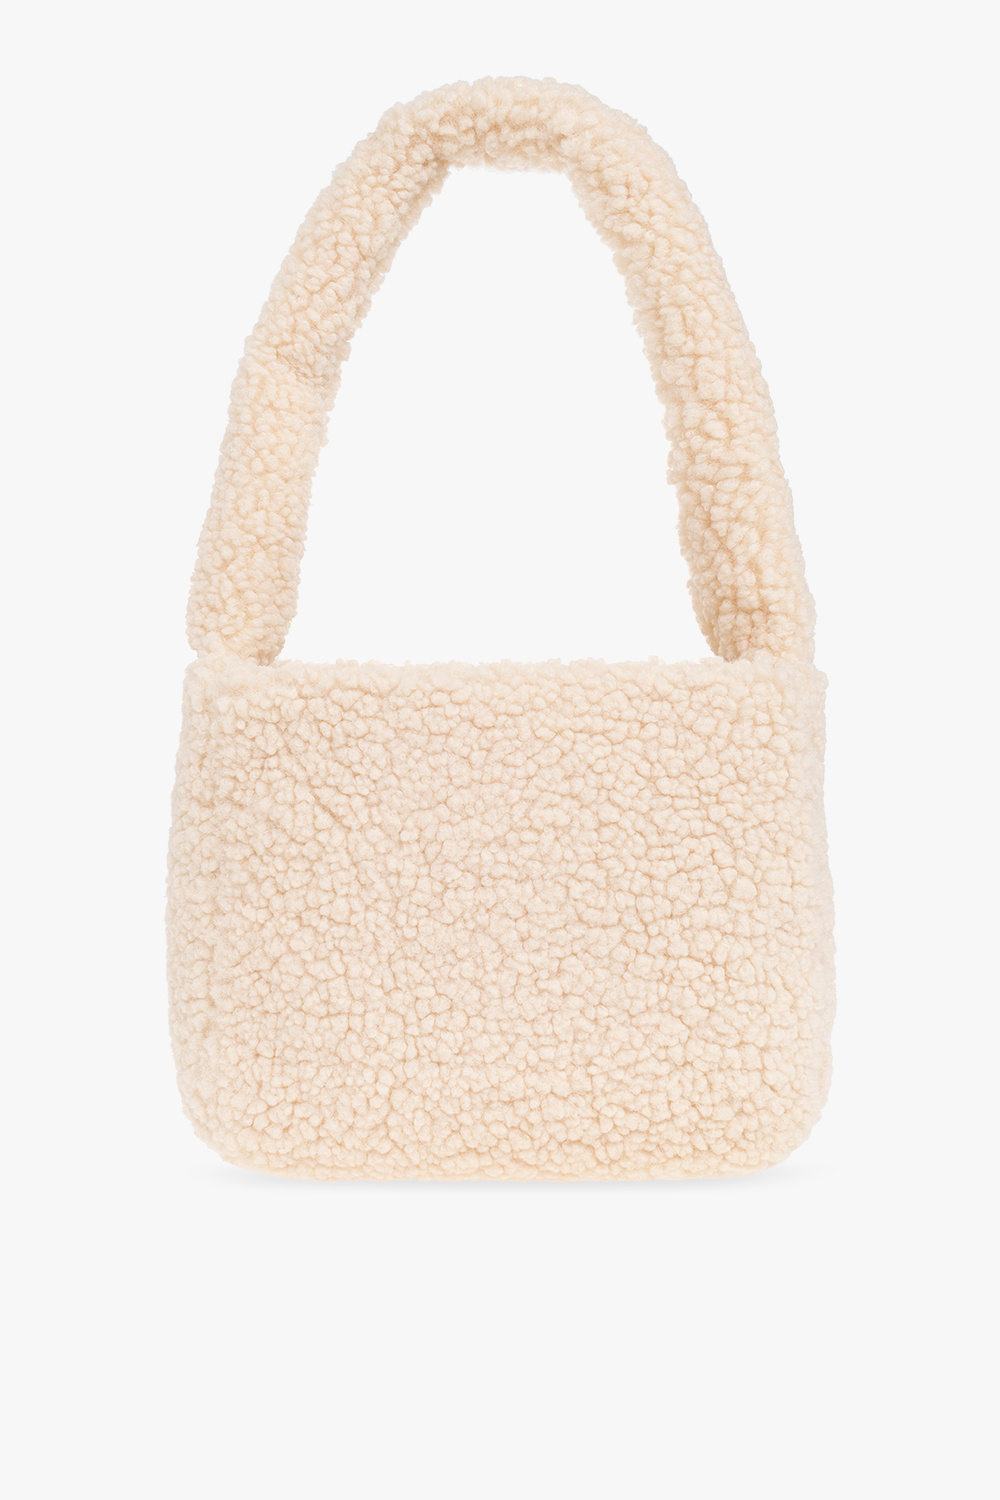 UGG ‘Edalene Medium’ shoulder bag